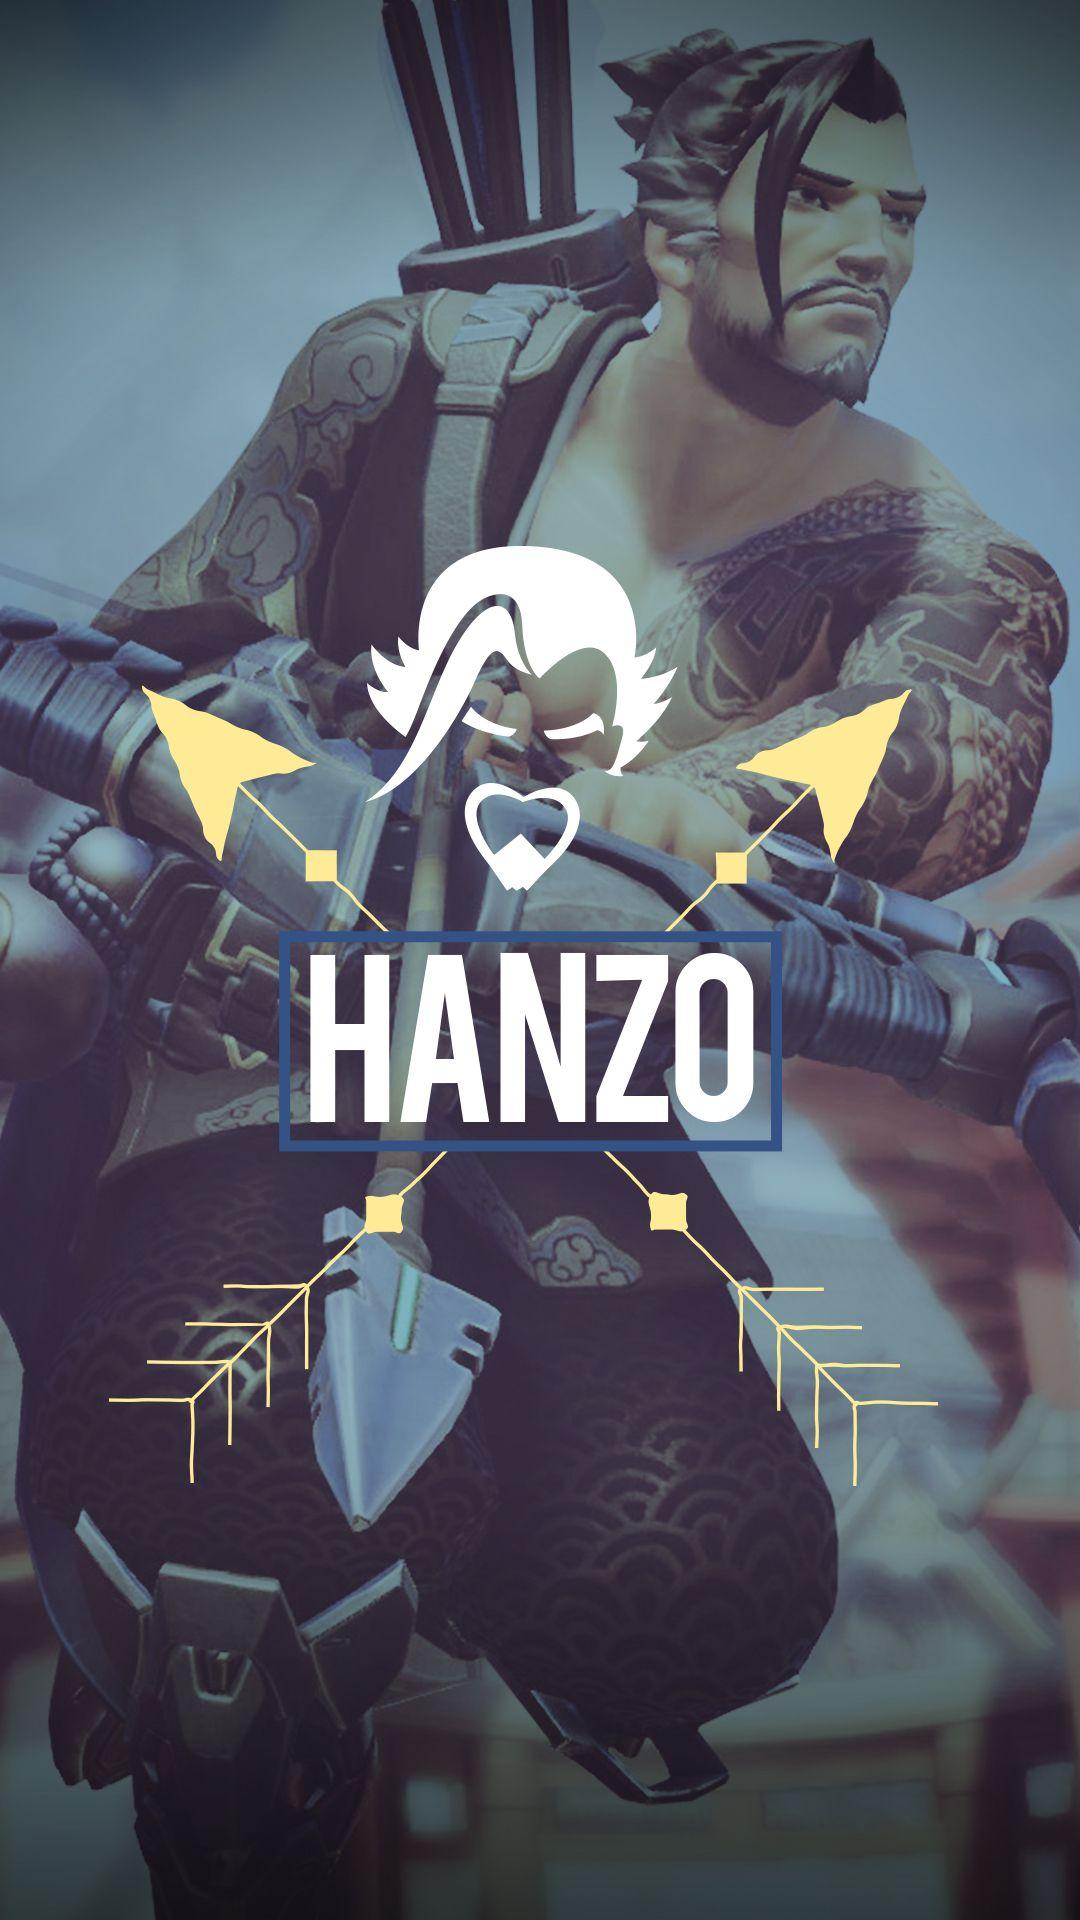 Hanzo Overwatch iPhone Wallpaper